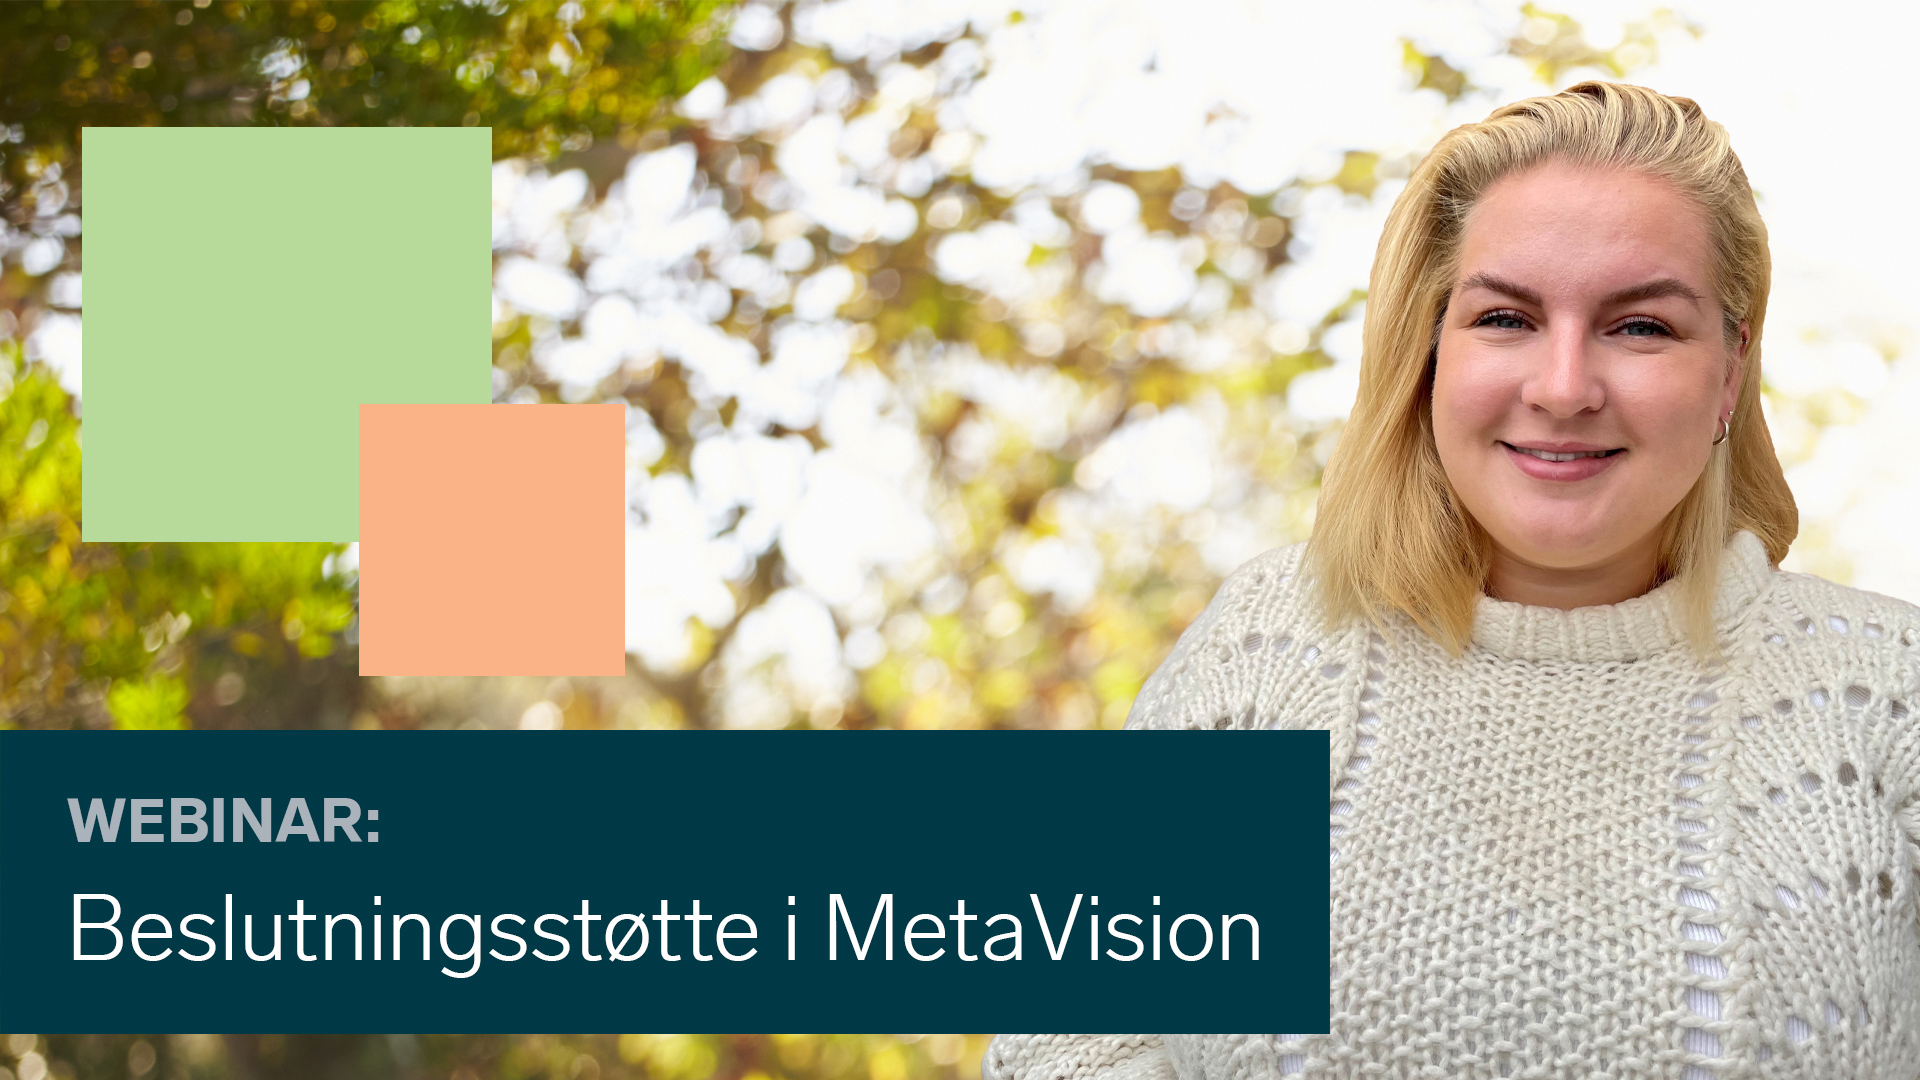 Karoline Hansen presenterte om beslutningsstøtte i MetaVision